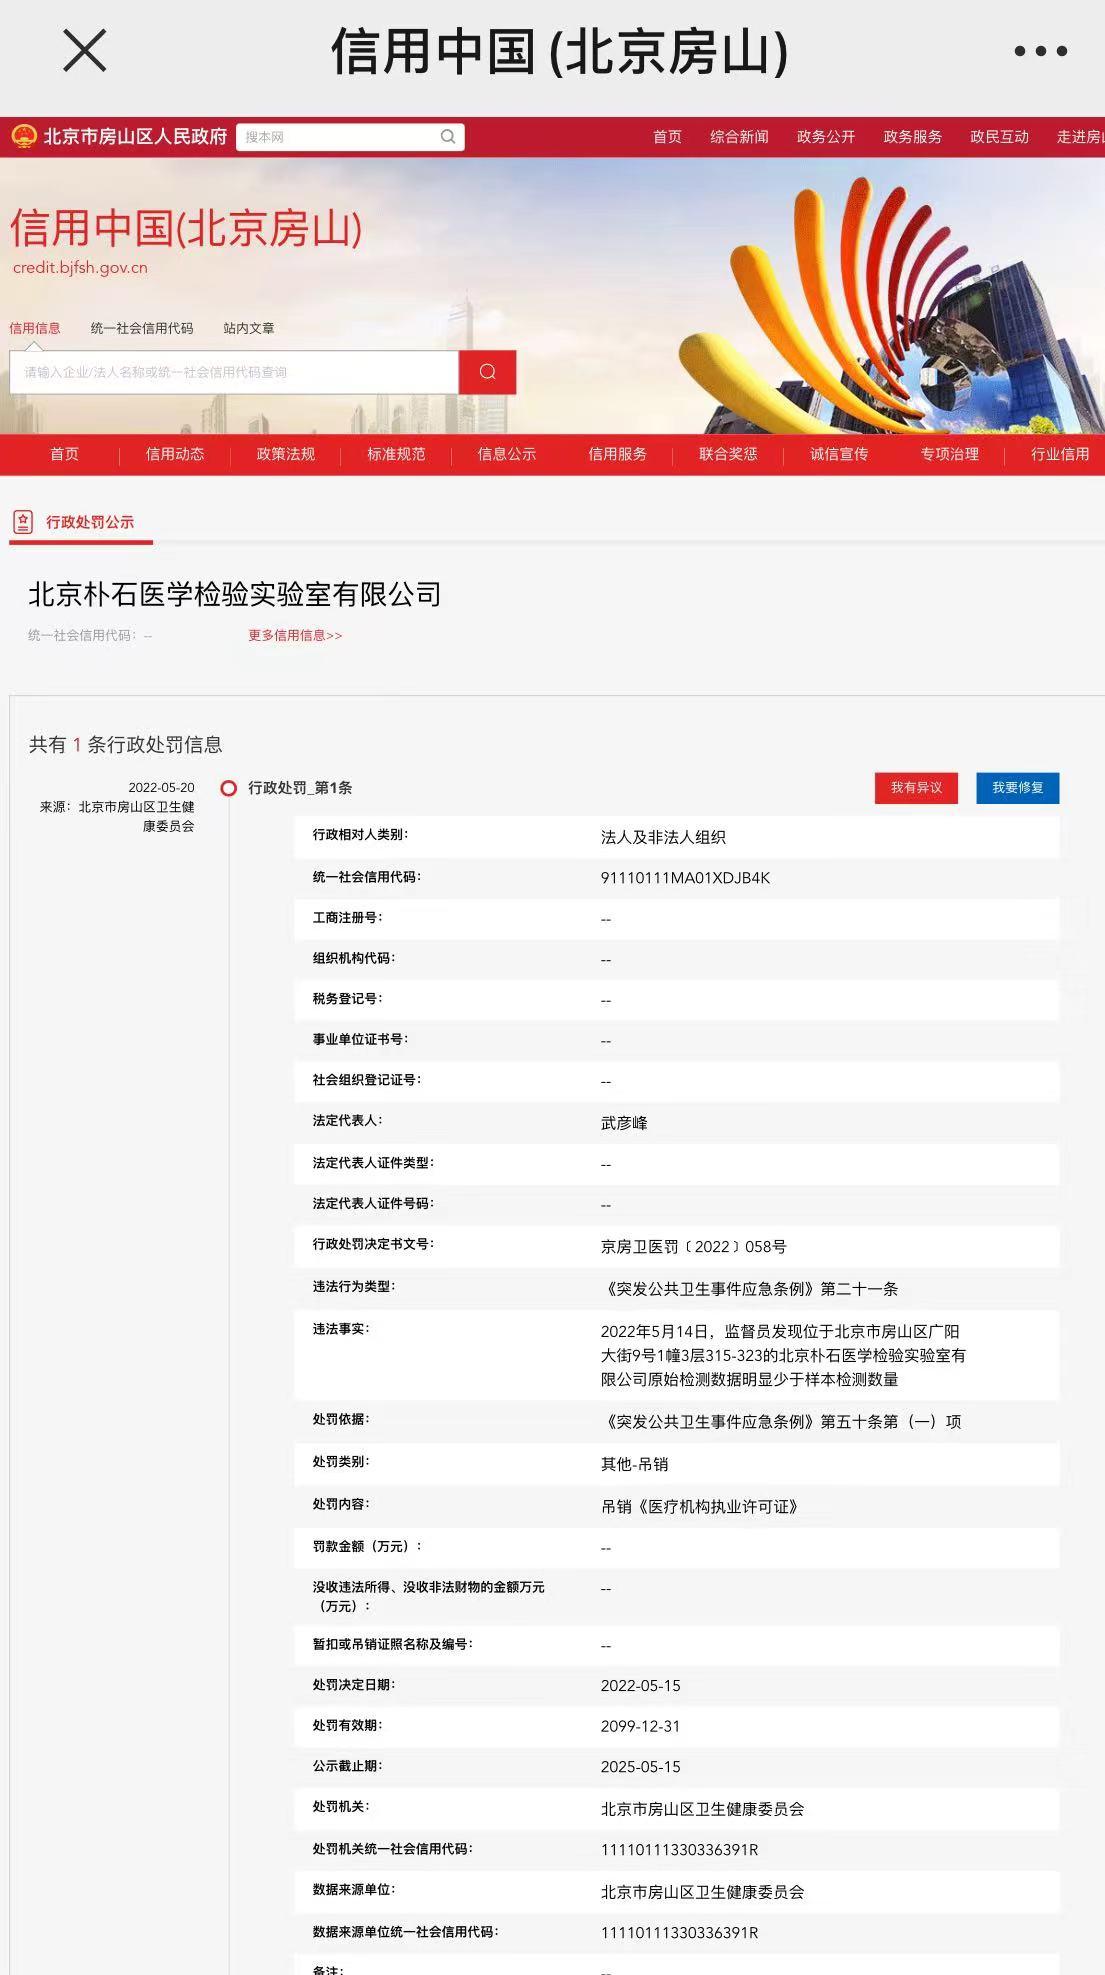 北京一检验实验室被吊销执业许可<font color="red">证</font>：原始检测数据少于样本数量